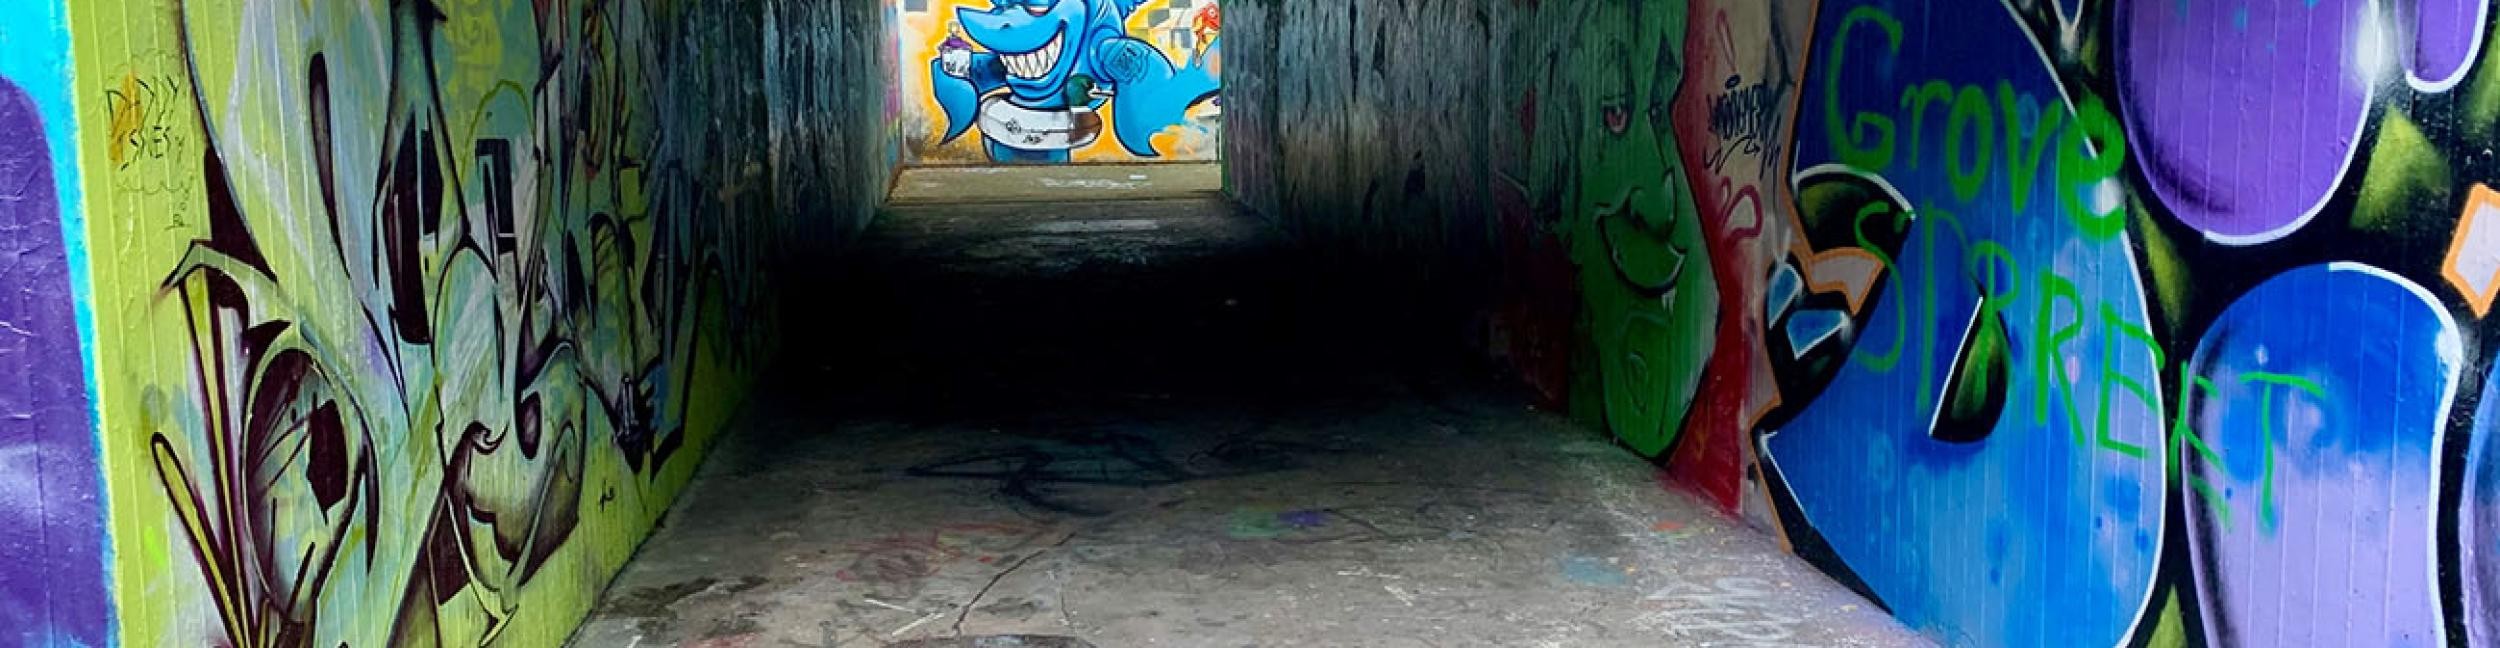 Unterführung mit bunten Graffitis an den Wänden - Buchstaben, grünes Gesicht, blauer Hai mit Schwimmring